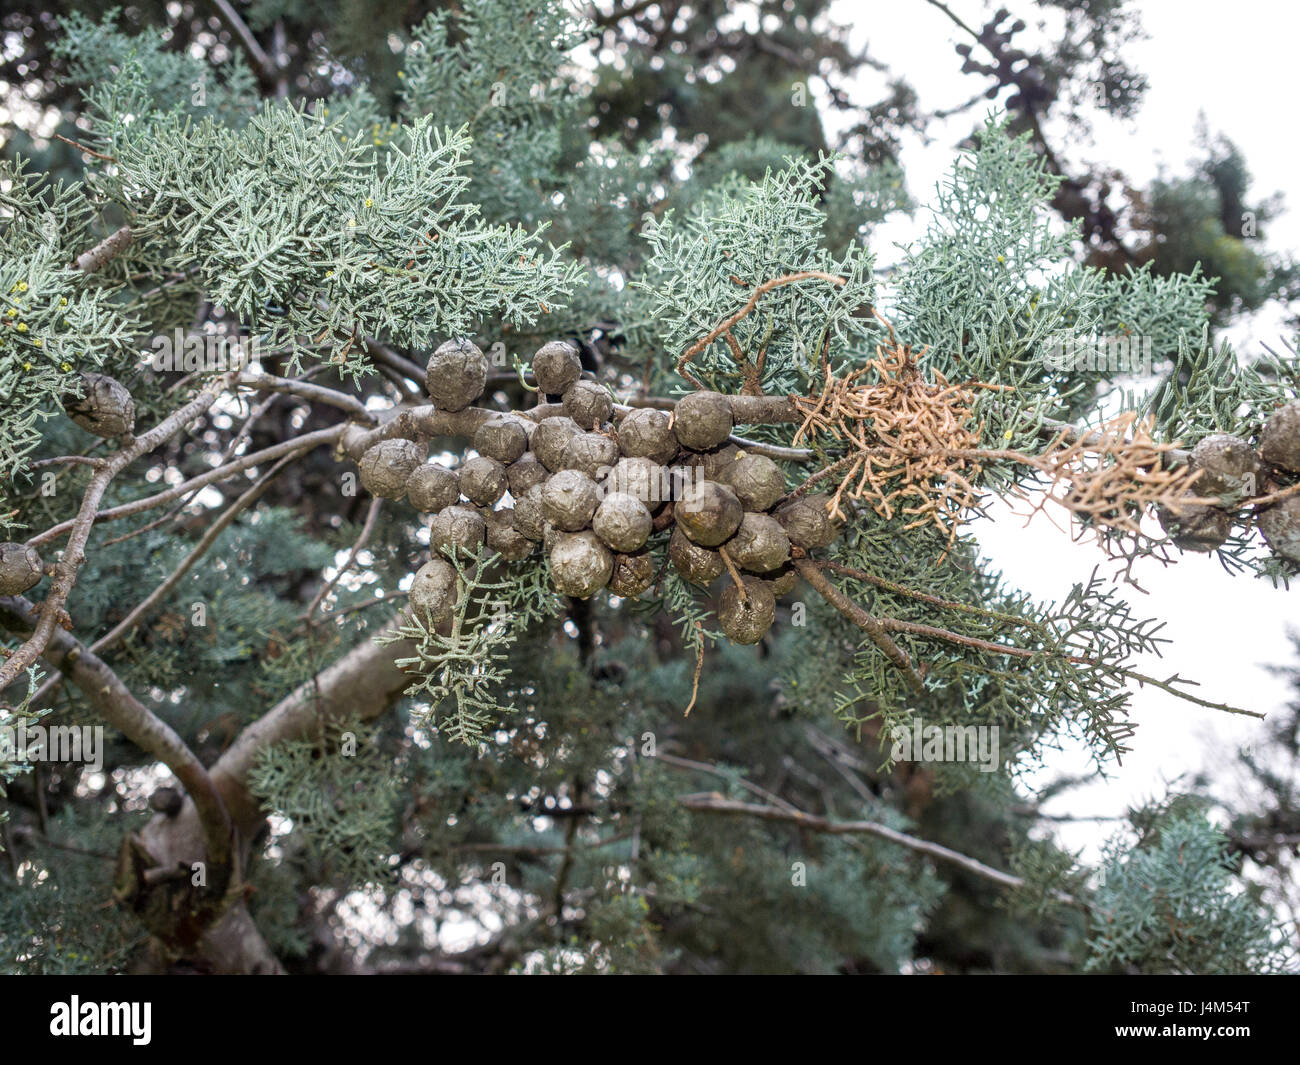 Arizónica (Cupressus arizonica) en el parque de El Retiro de Madrid, España. Stock Photo